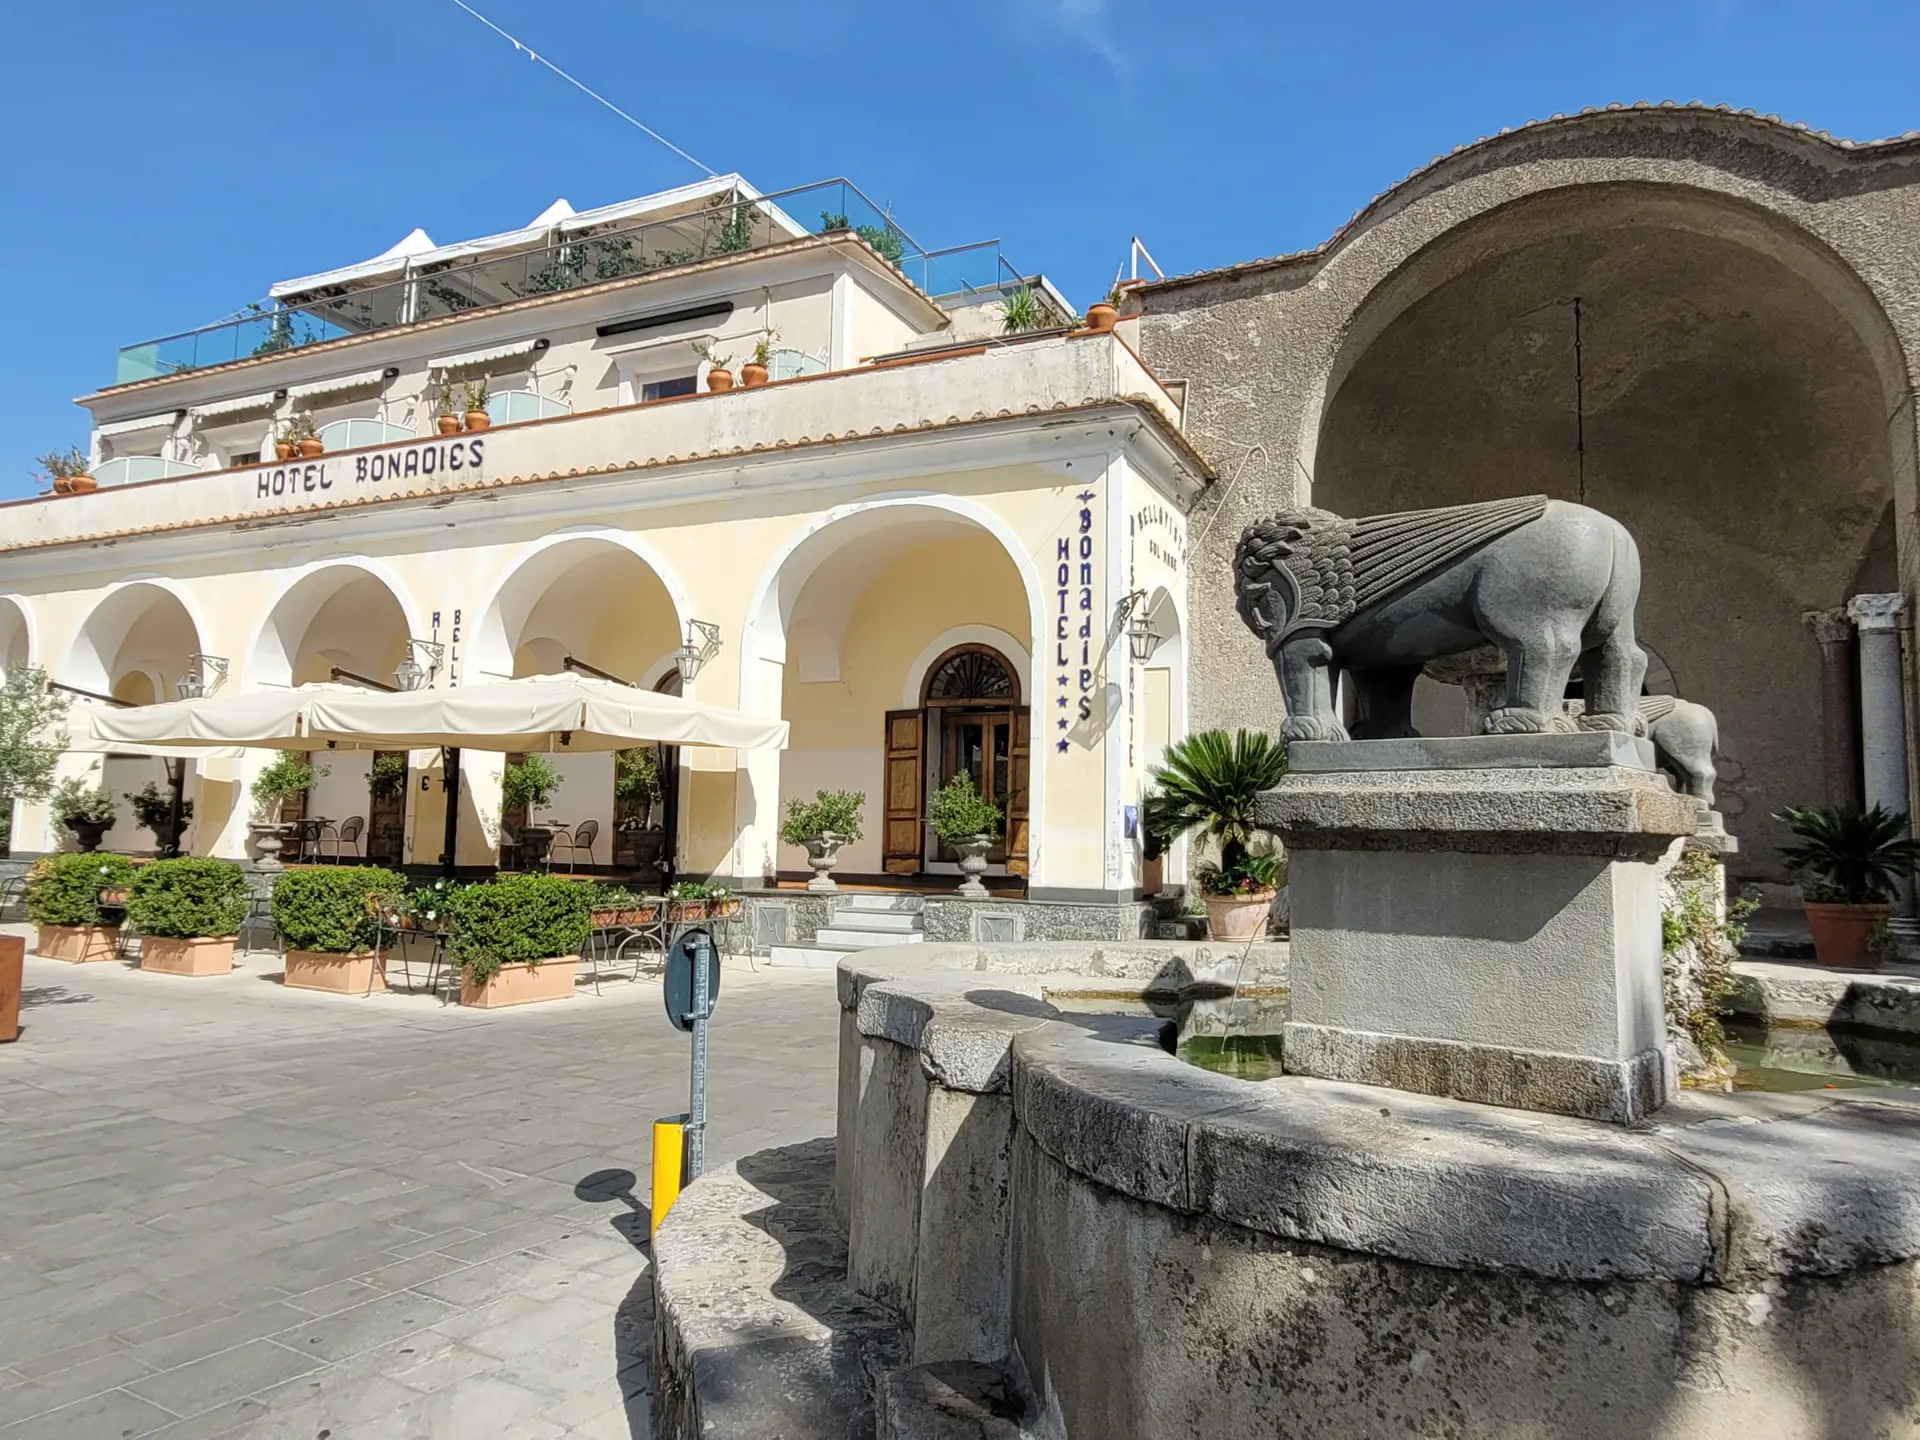 Hotel Bonadies ligger på ett torg i Ravello